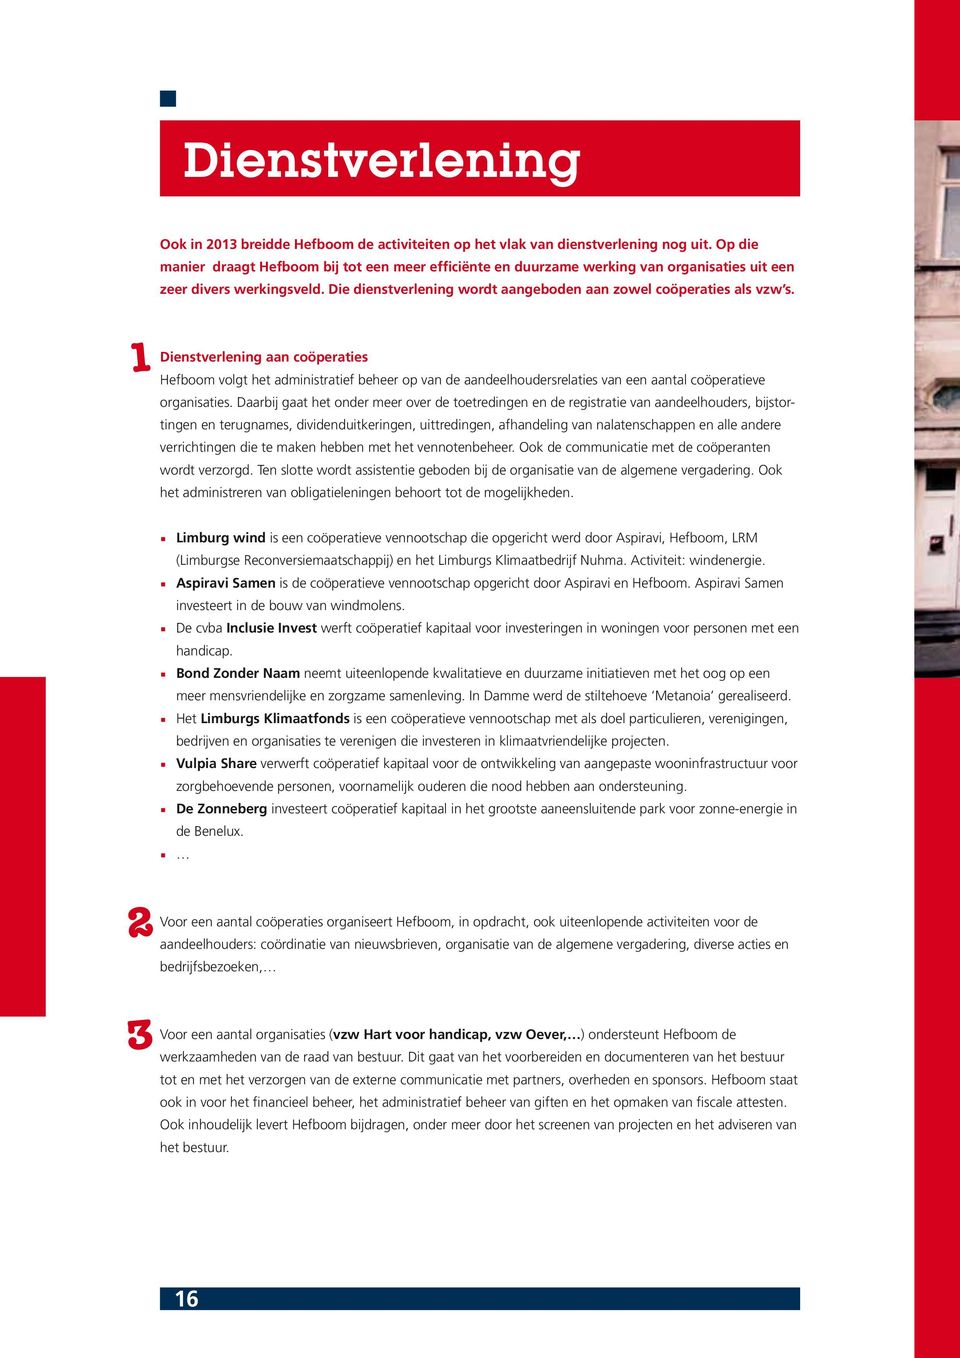 1 Dienstverlening aan coöperaties Hefboom volgt het administratief beheer op van de aandeelhoudersrelaties van een aantal coöperatieve organisaties.